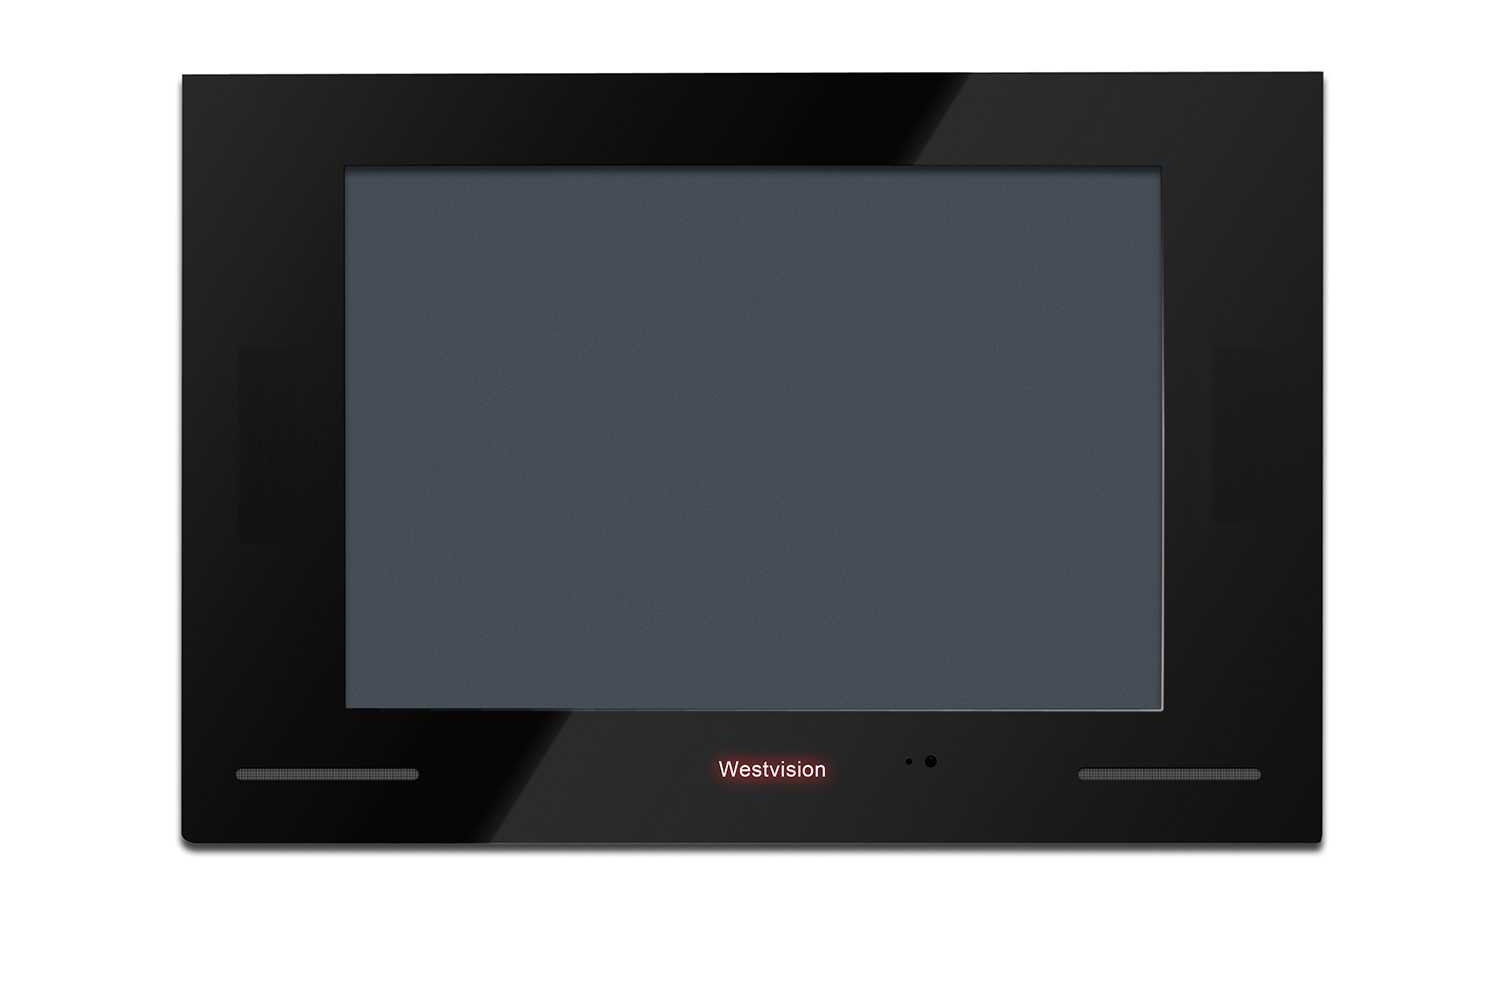 Westvision brilliant 17 - купить , скидки, цена, отзывы, обзор, характеристики - телевизоры